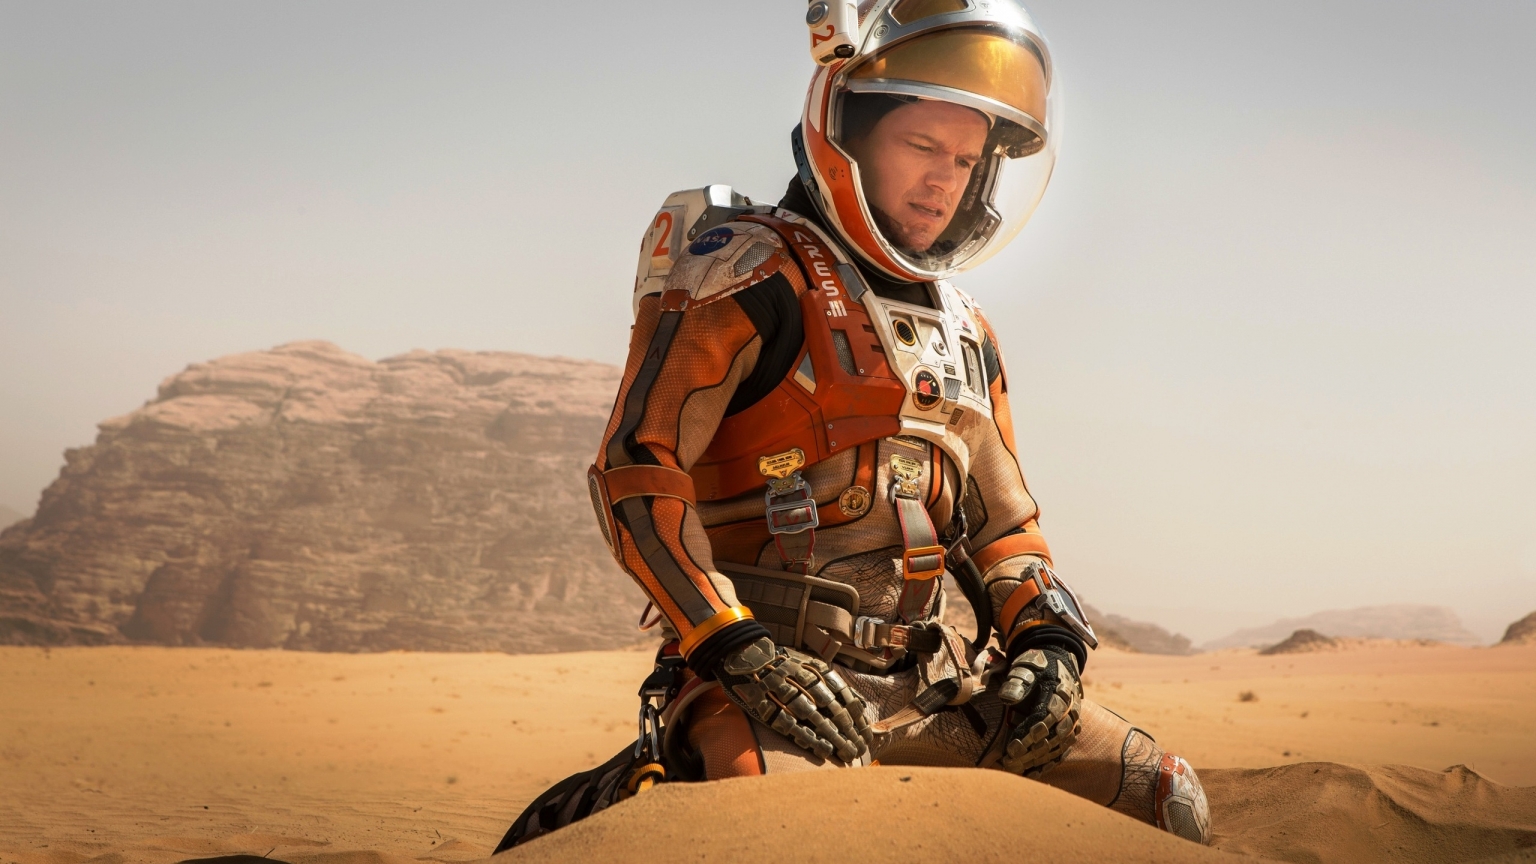 The Martian Matt Damon for 1536 x 864 HDTV resolution